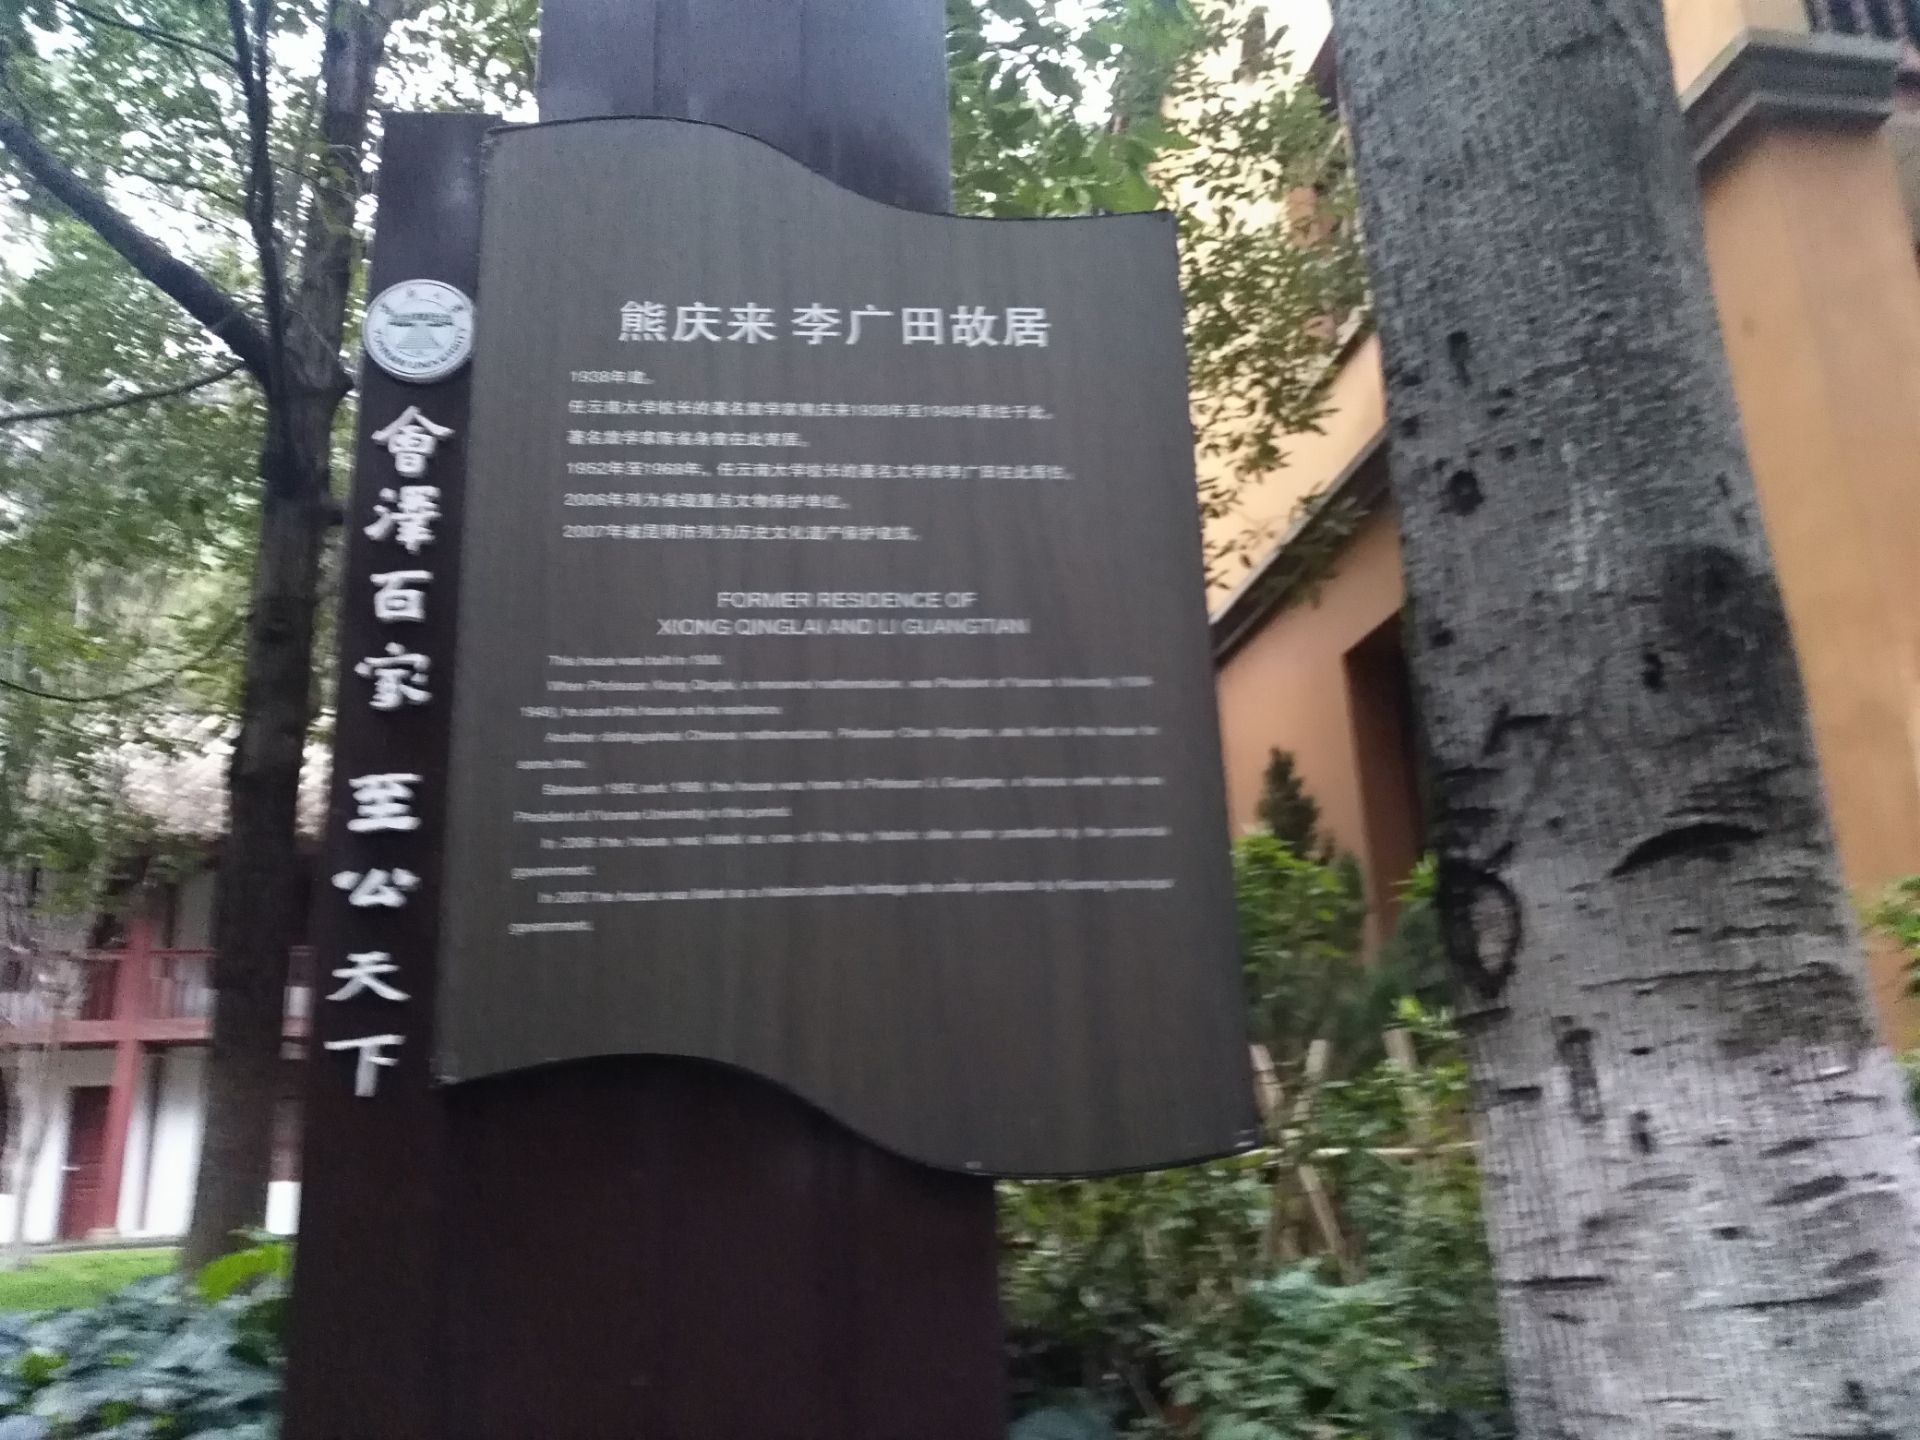 曾经的云南大学的校长熊庆来旧居纪念馆就在云南大学熊庆来的旧居中